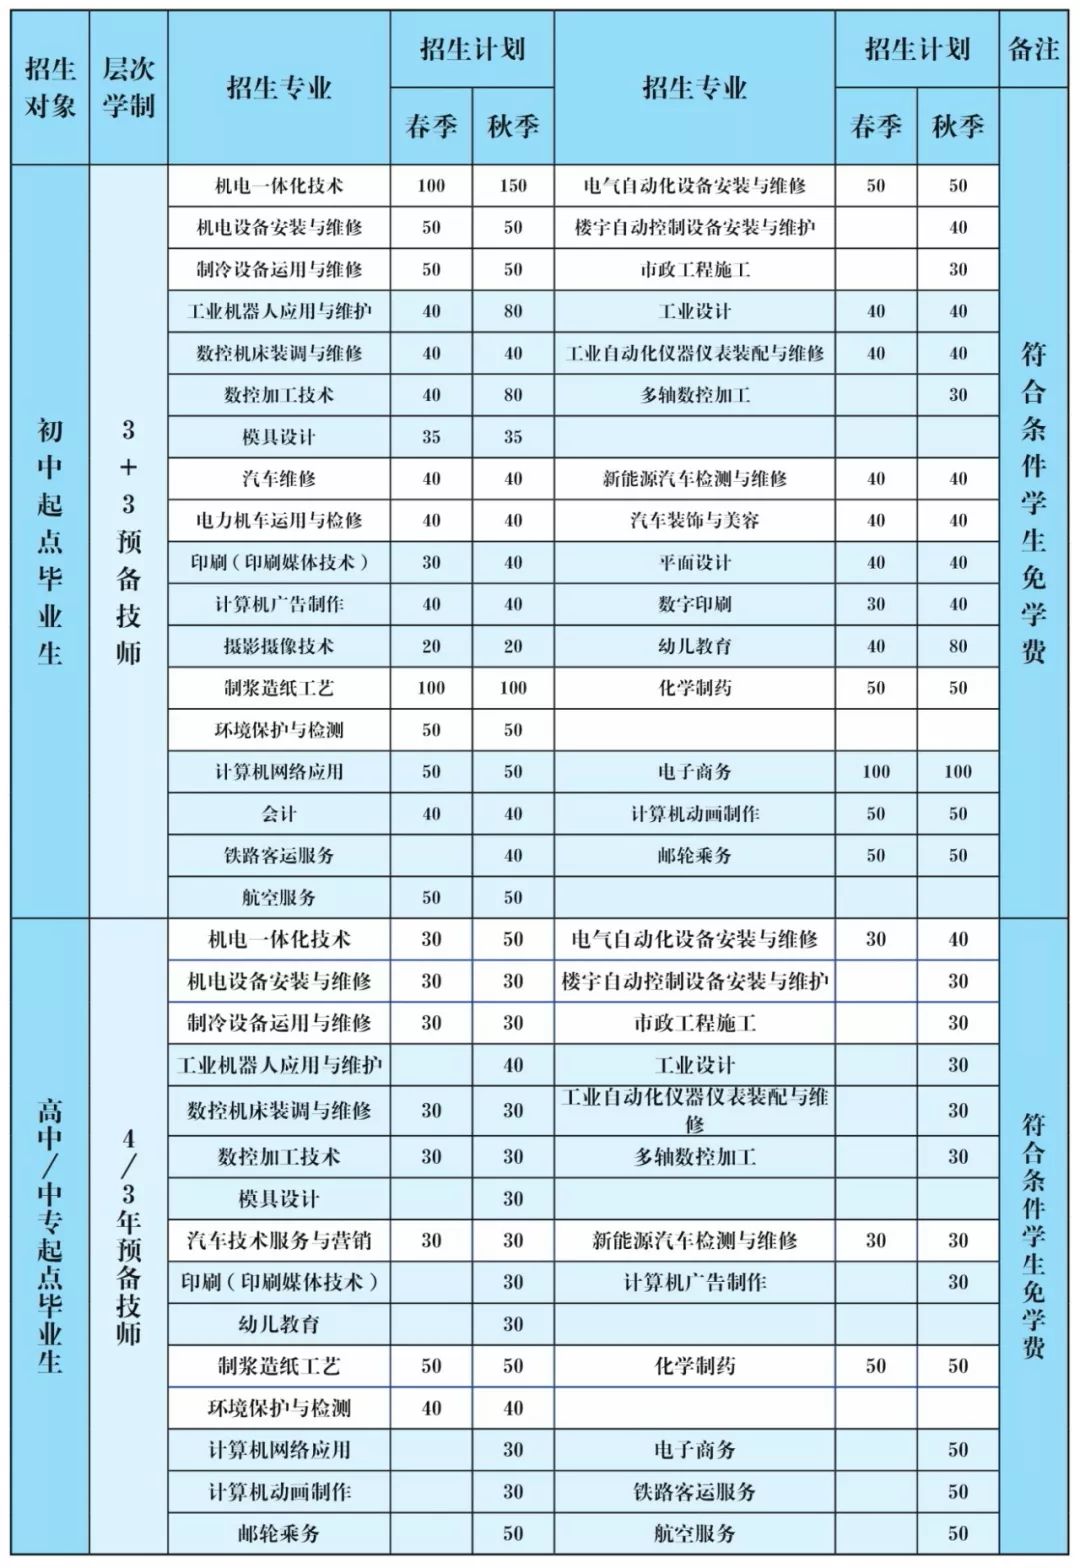 3、广州高中毕业证书学分等级是多少：关于高中考试学分和毕业证书